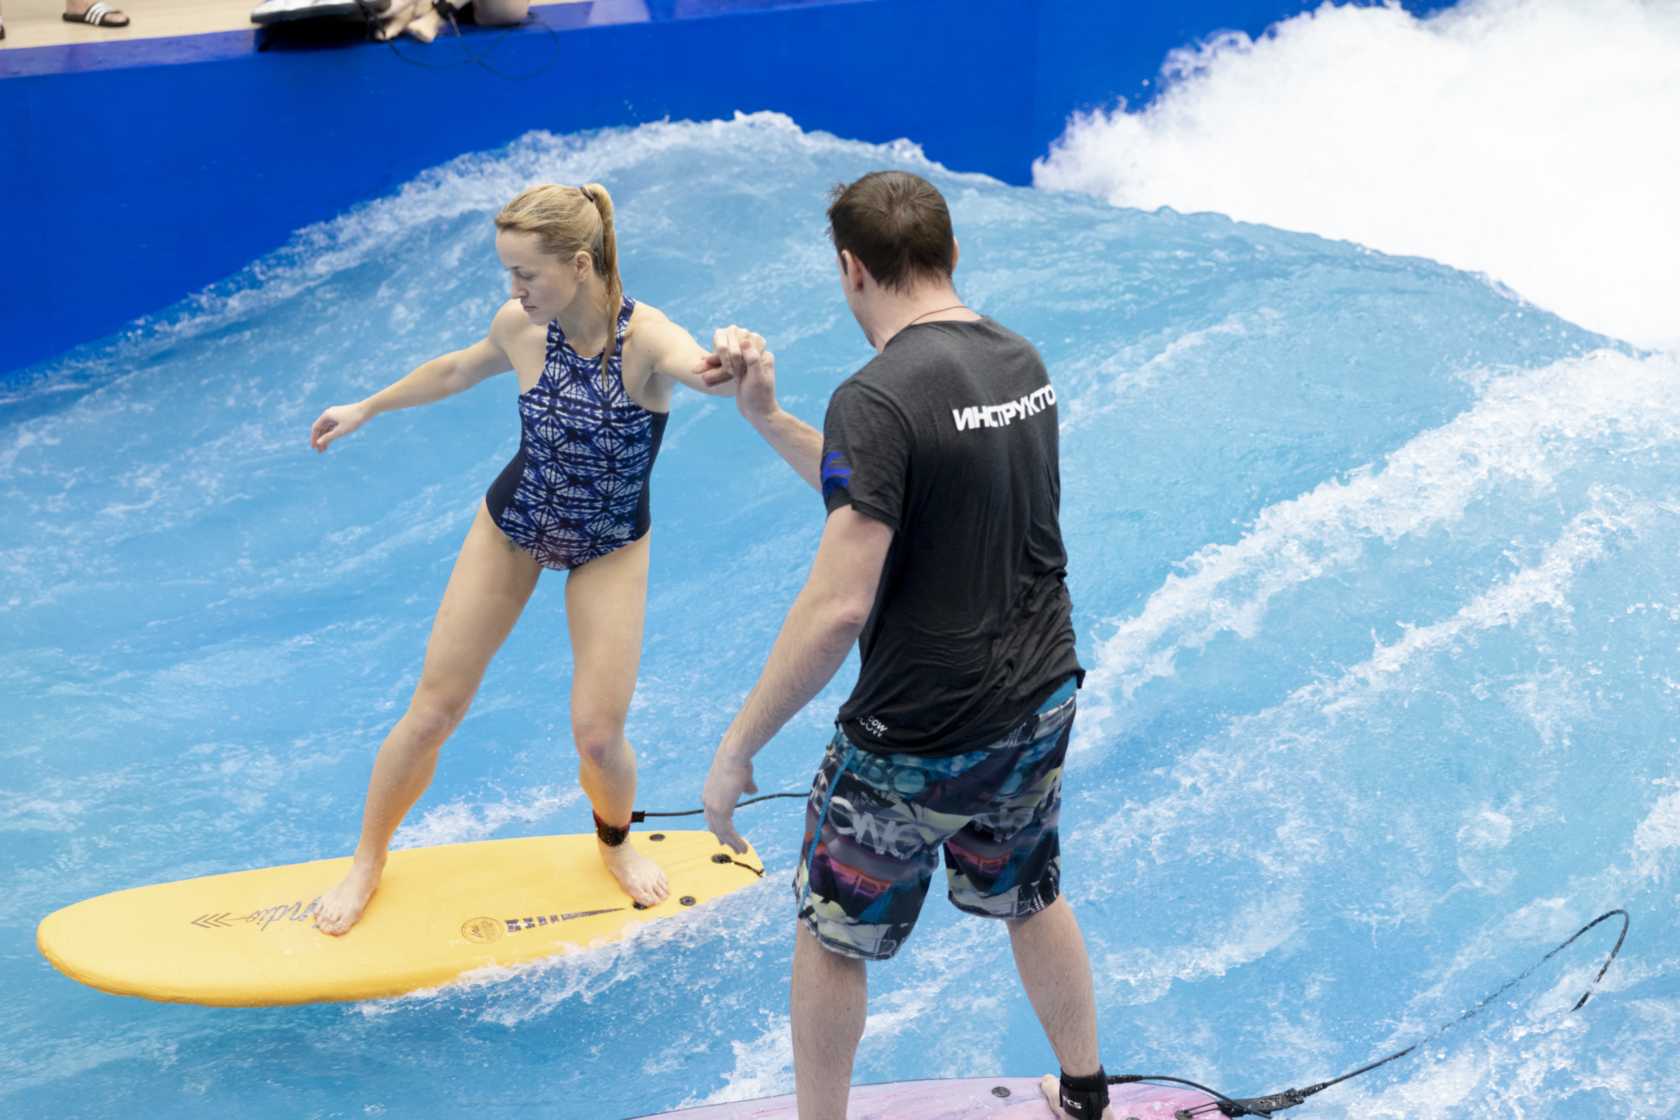 Как проходят занятия сёрфингом на искусственной волне?